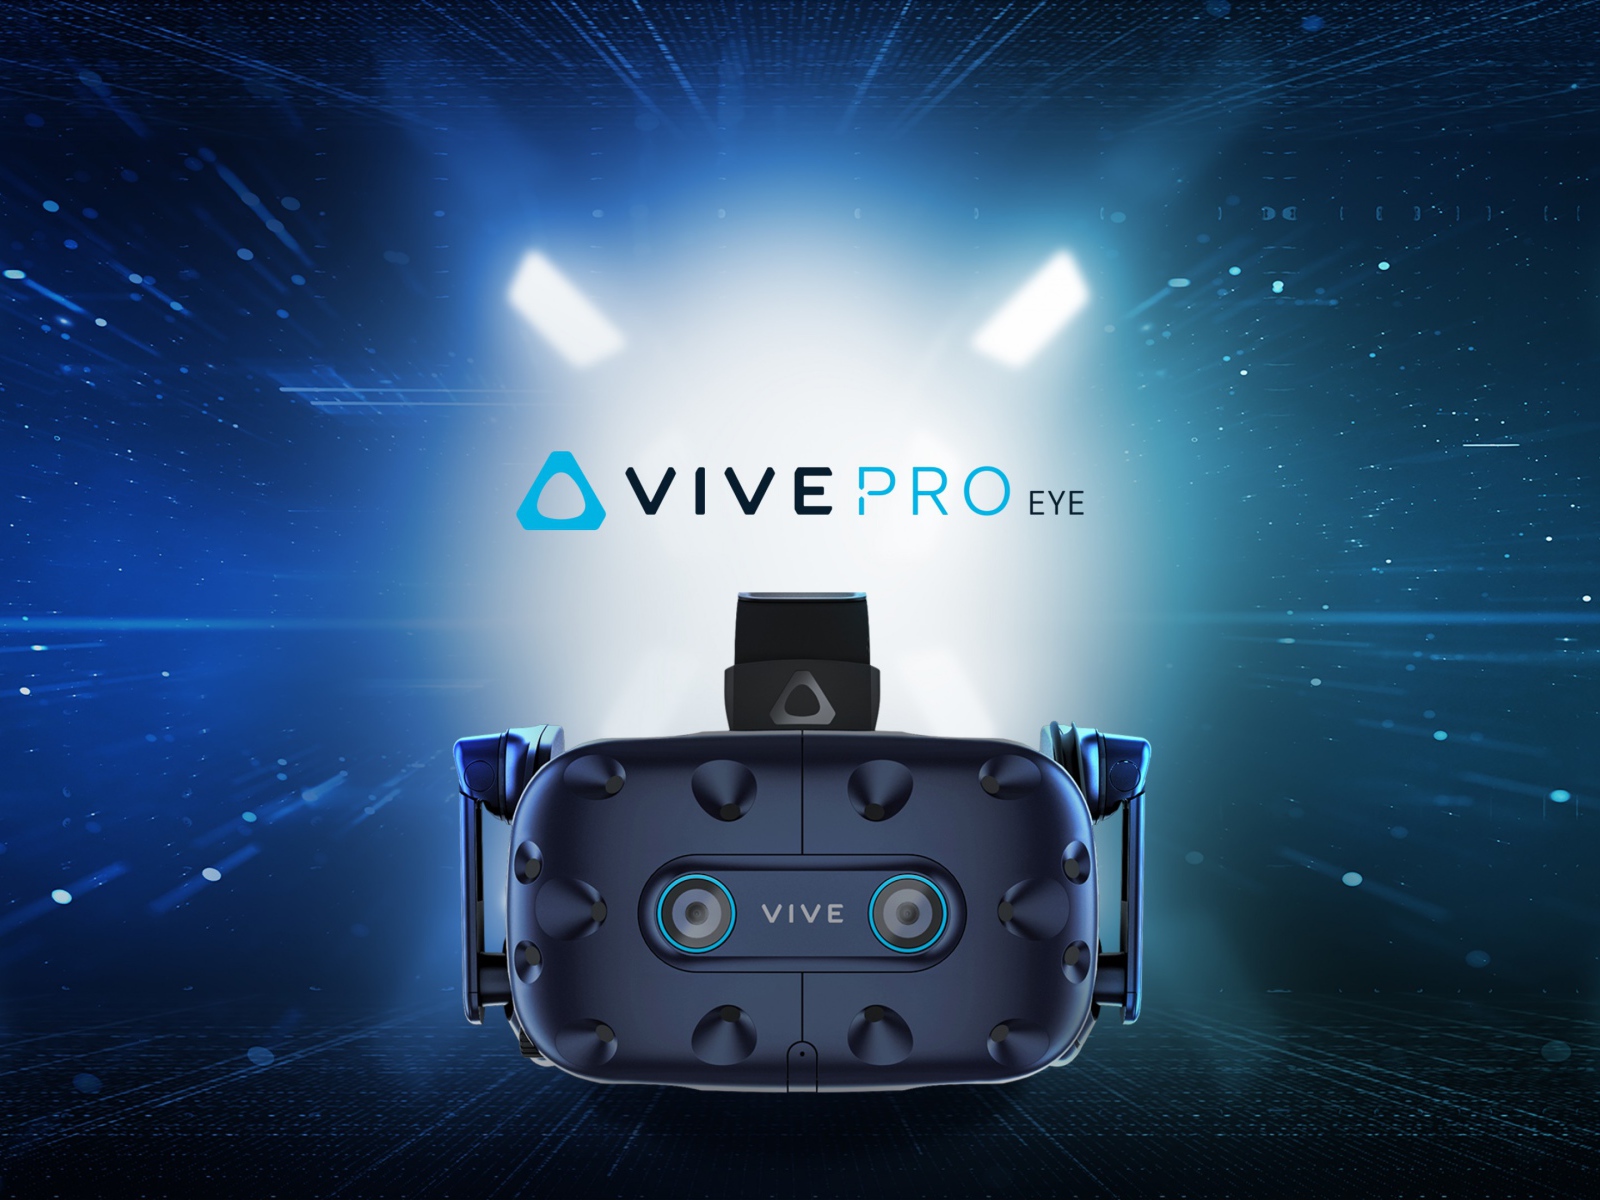 Points of virtual reality HTC Vive Pro Eye, CES 2019